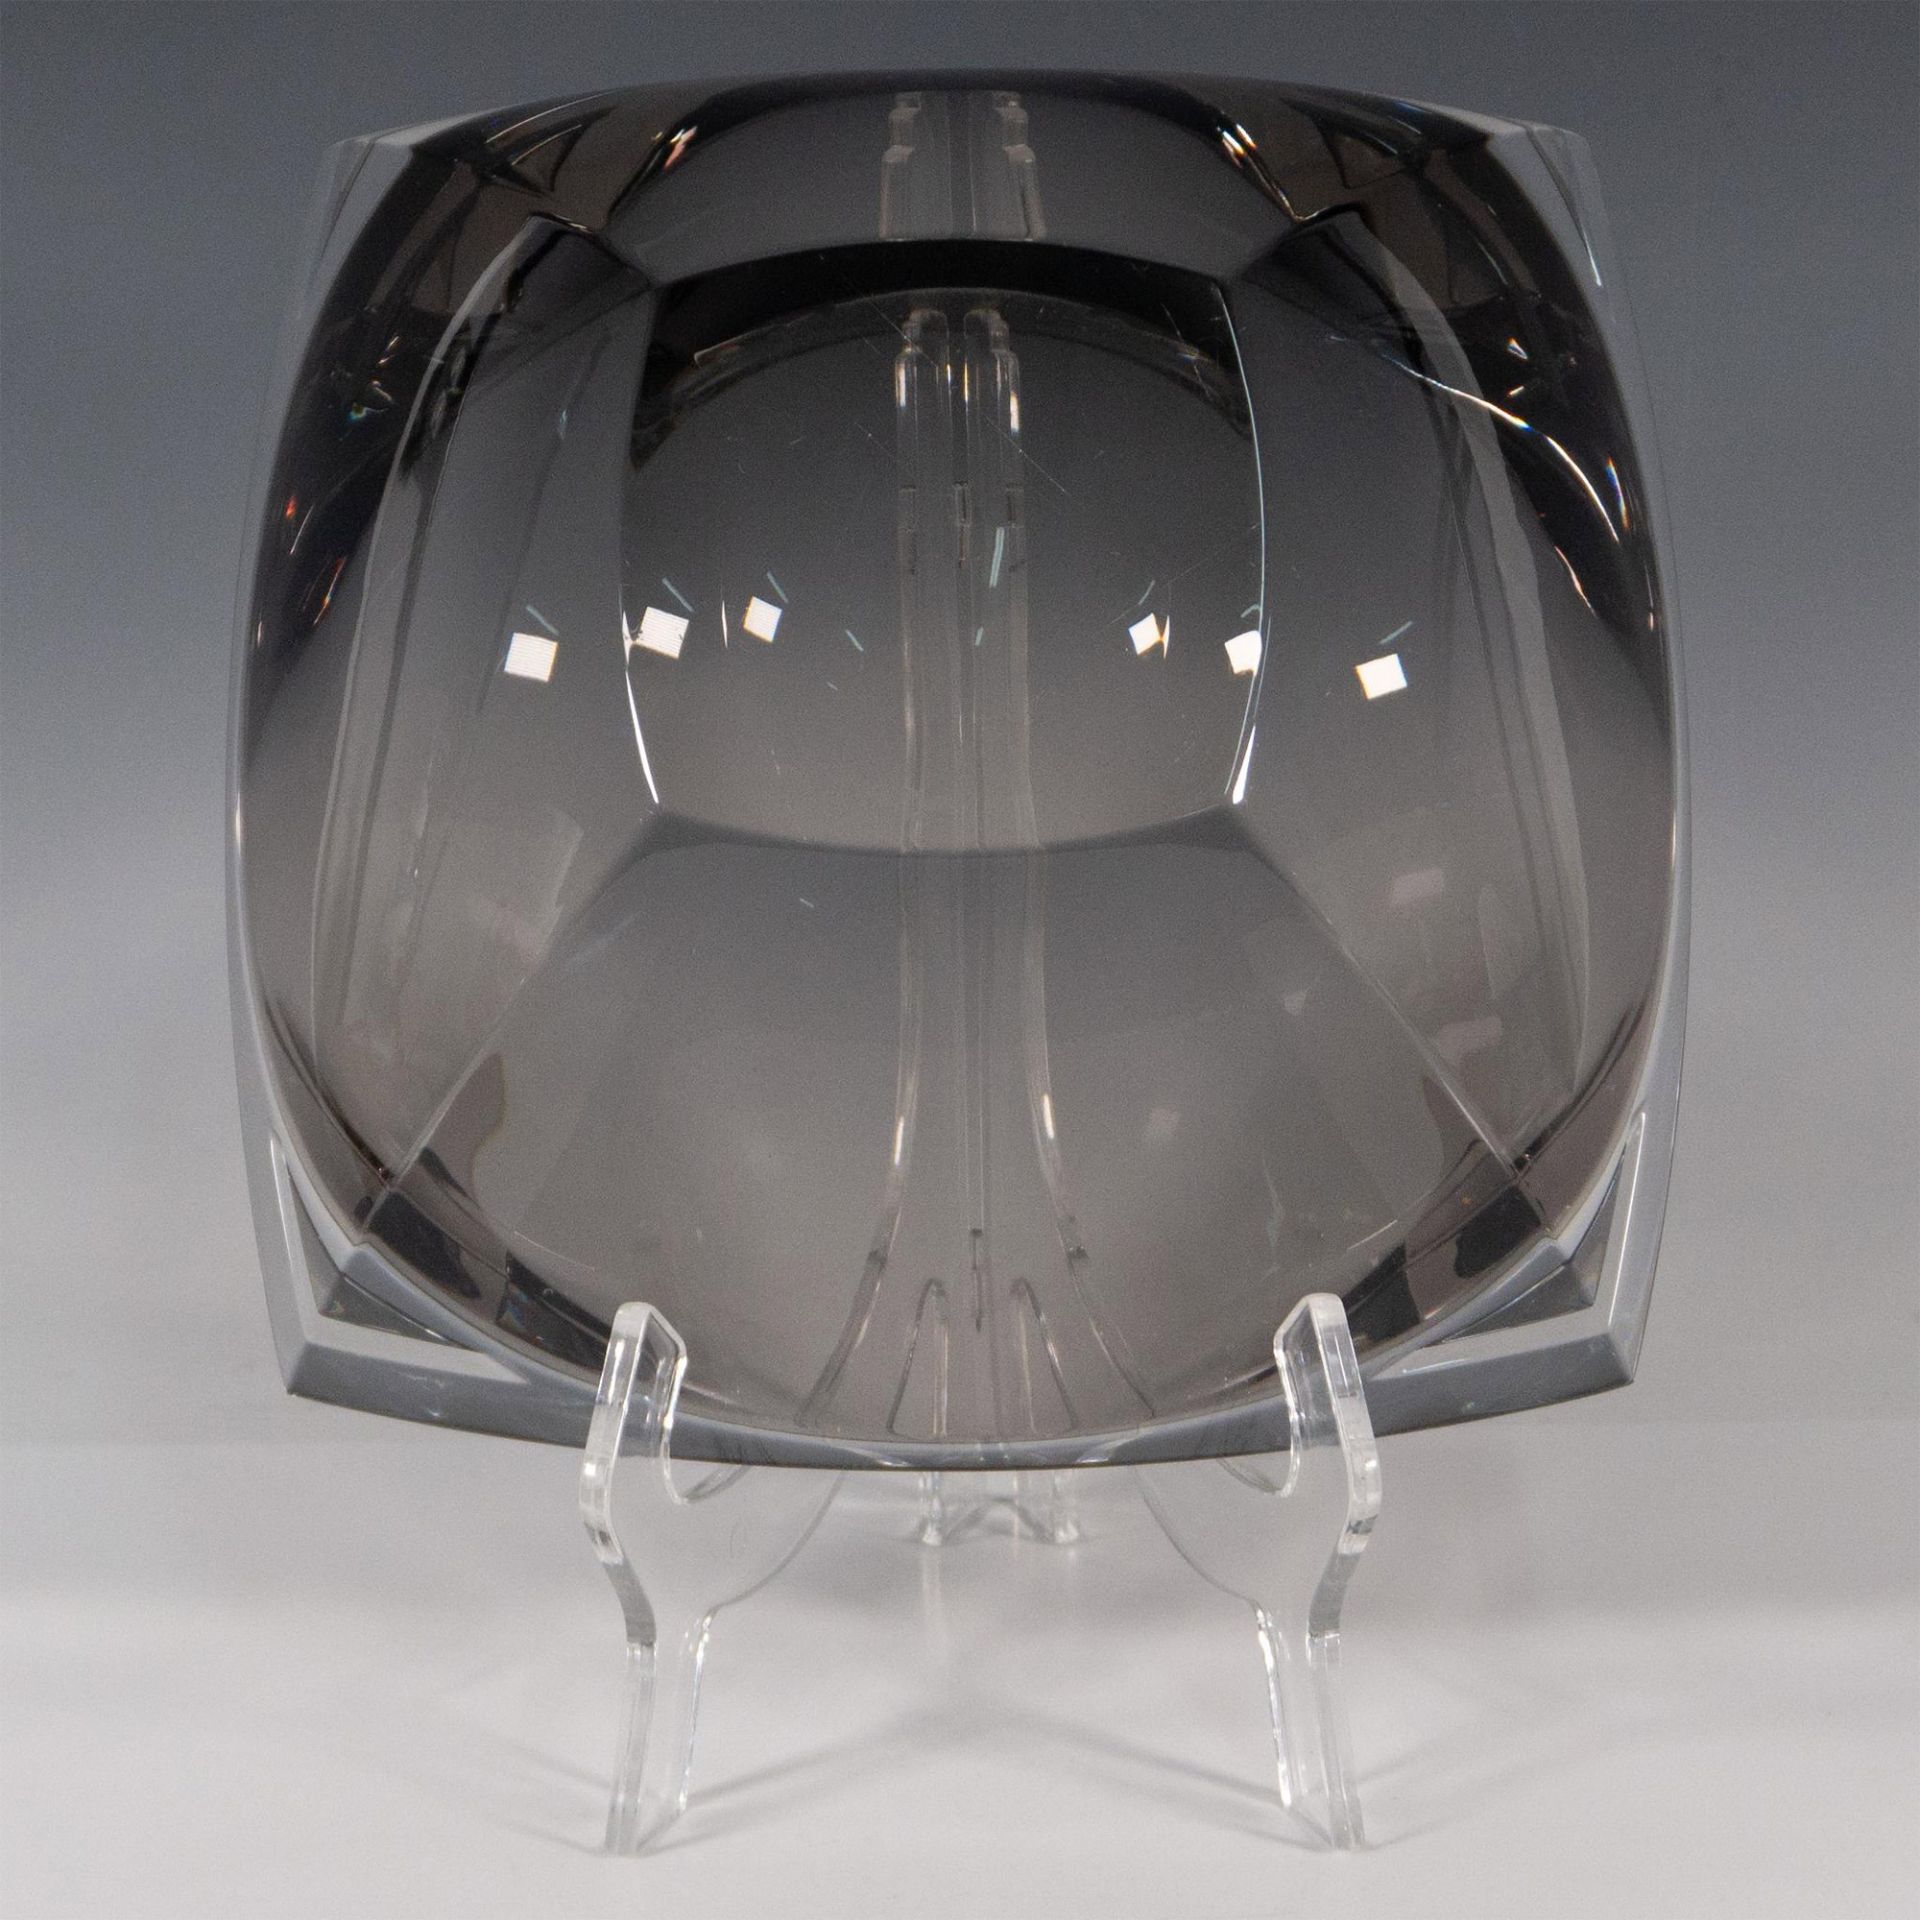 Waterford Crystal Bowl, Metra Smoke - Image 2 of 2